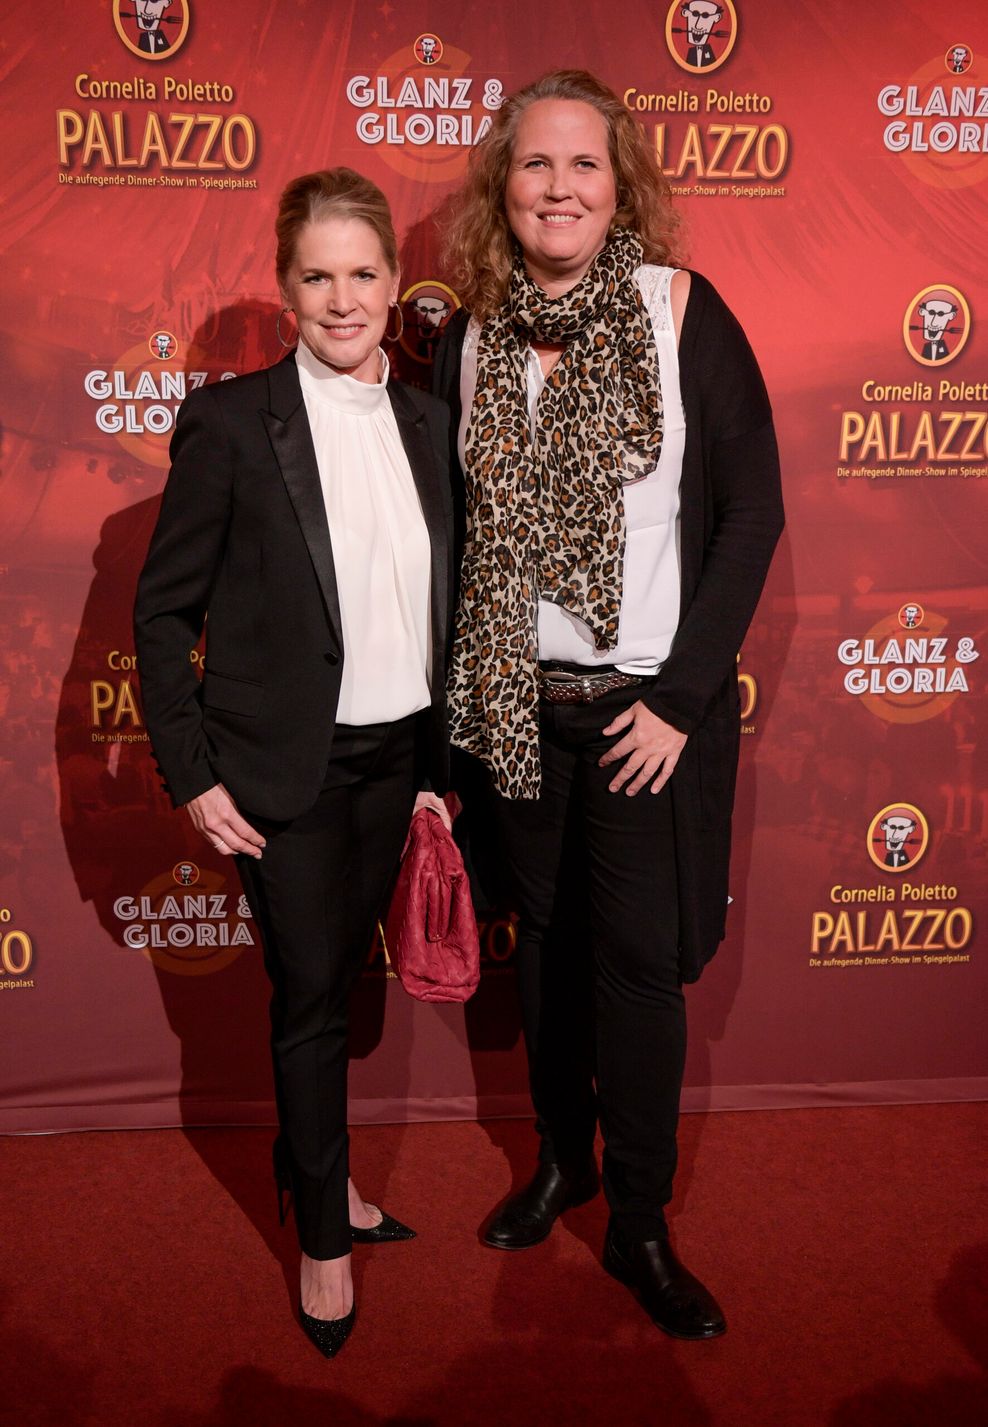 Cornelia Poletto, Starköchin, und Michaela Töpfer, Geschäftsführerin des Palazzo zur Premiere der neuen Palazzo-Show „Glanz & Gloria“ im Zelt vor den Deichtorhallen auf dem Roten Teppich.